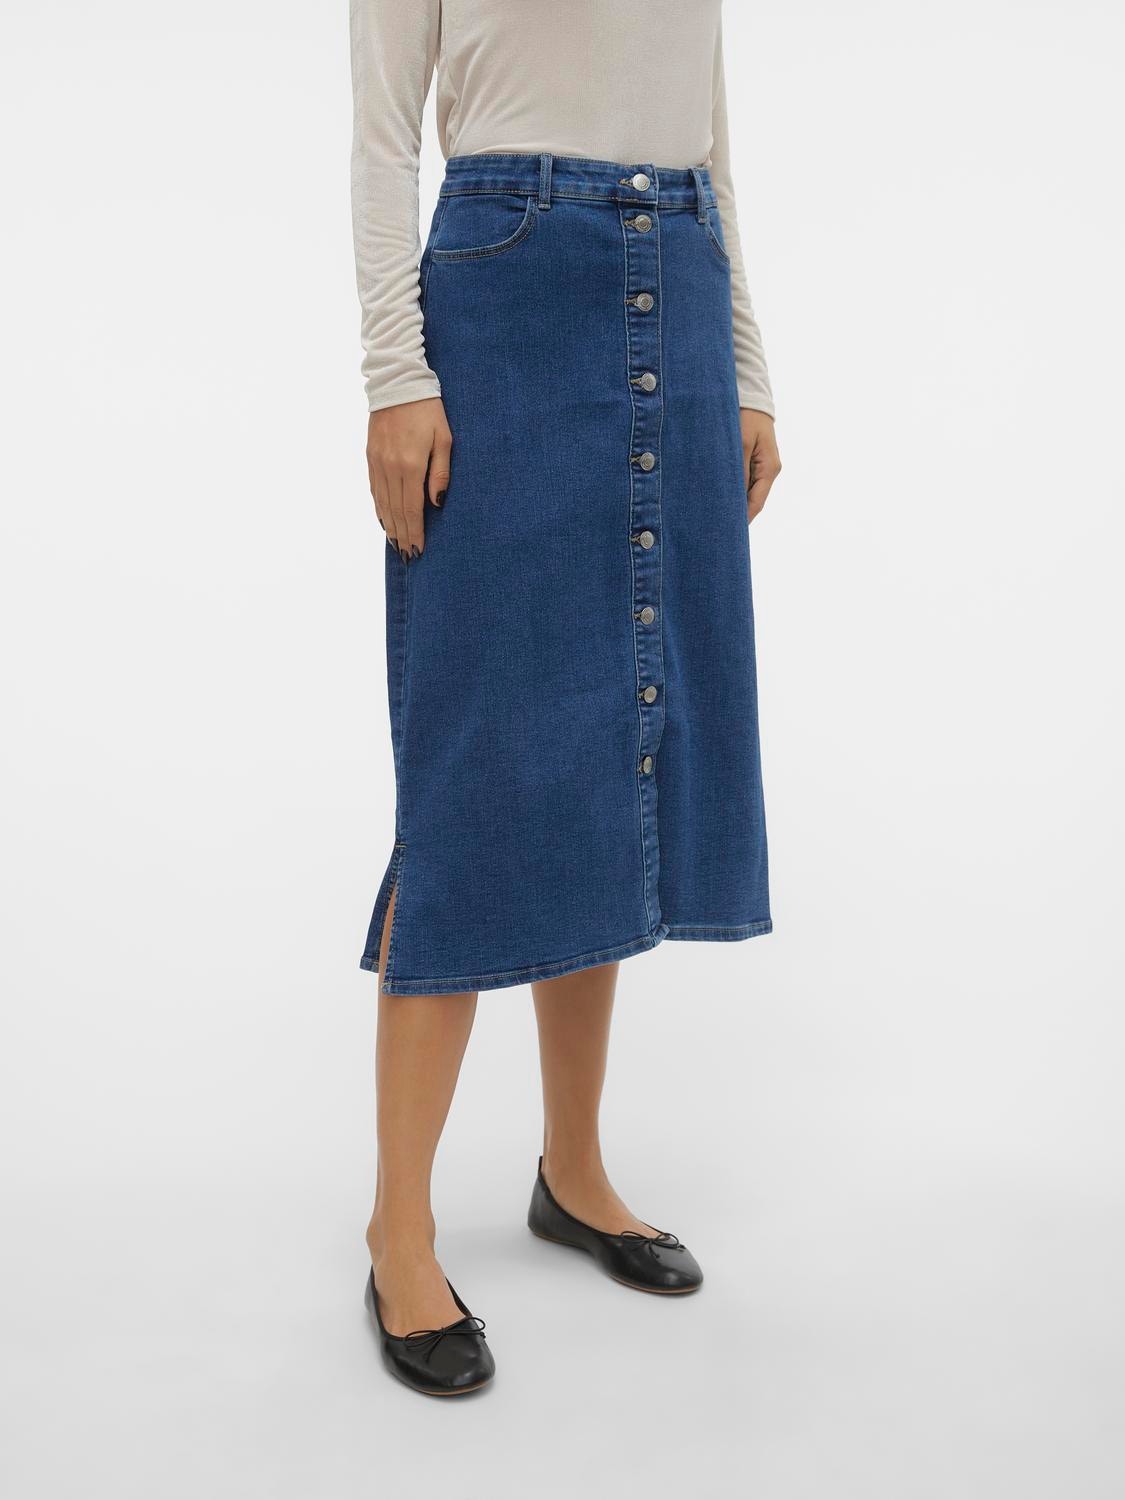 Vero Moda VMNELLY Long Skirt -Medium Blue Denim - 10310664